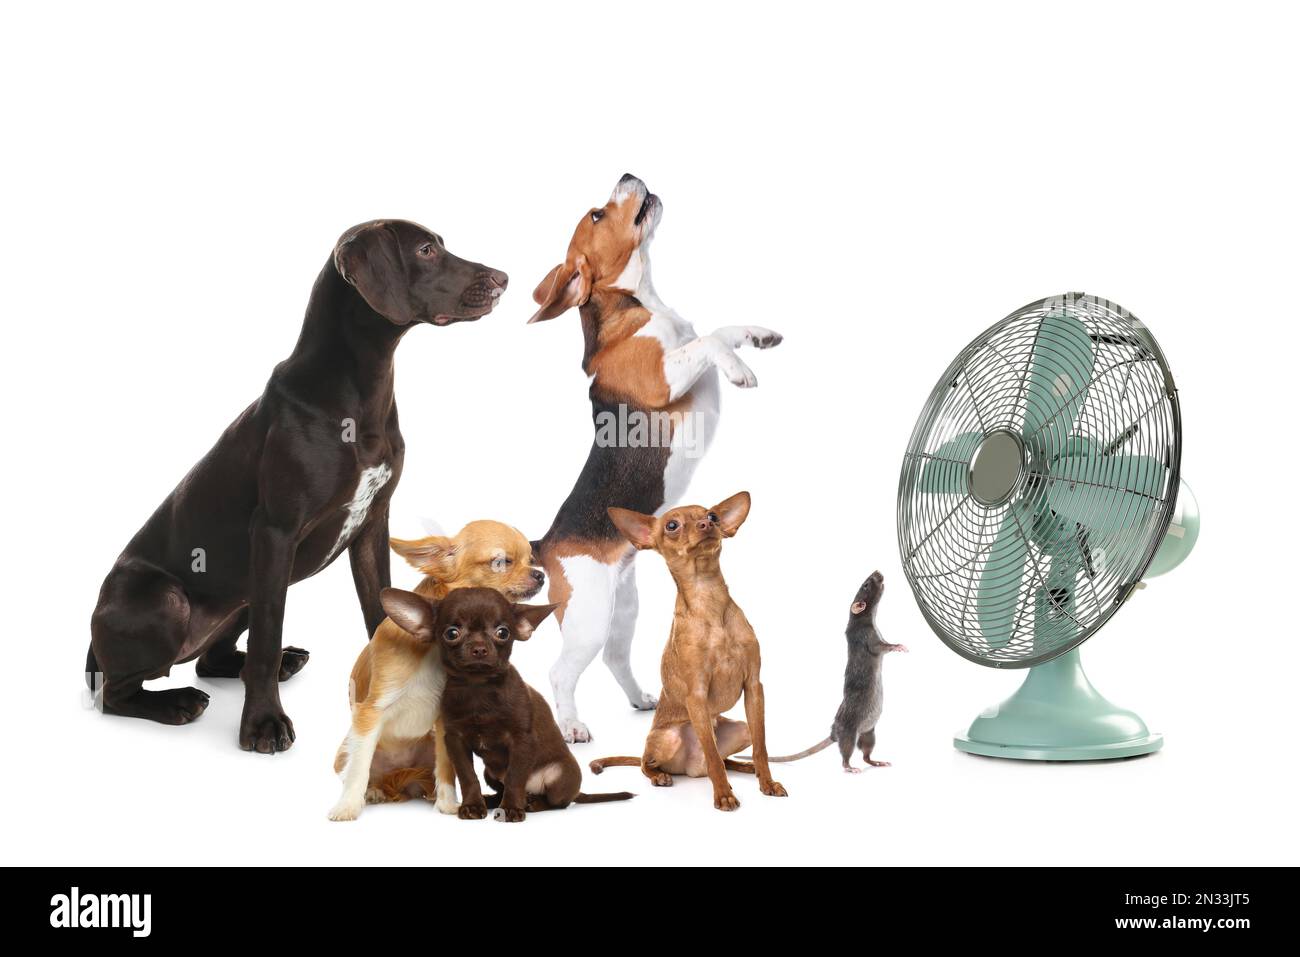 Les chiens et les rats sont adorables, près du ventilateur, sur fond blanc. Chaleur estivale Banque D'Images